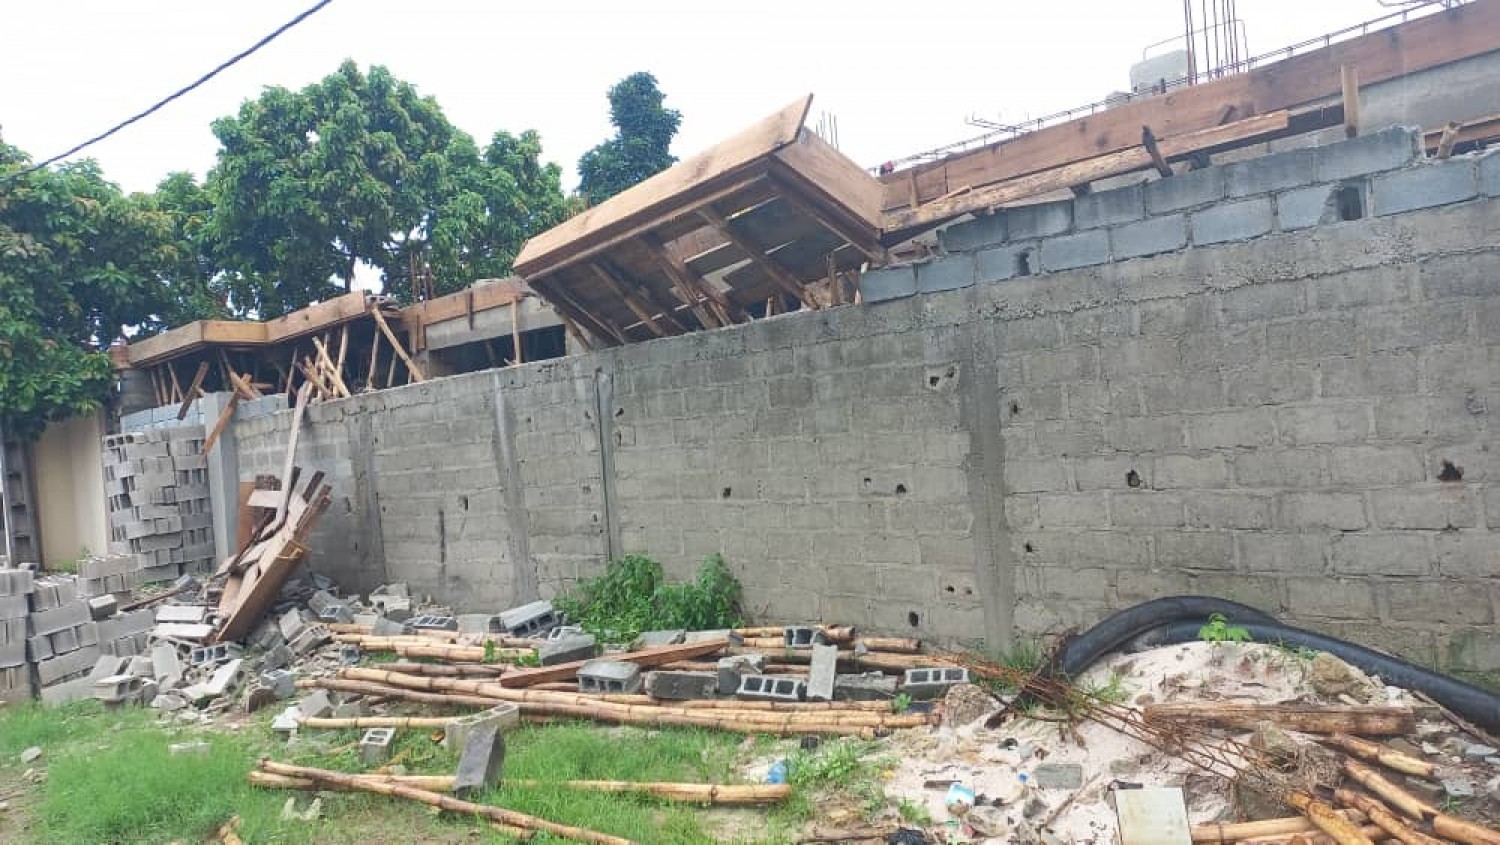 Côte d'Ivoire : Cocody-Abatta, contrairement aux infos relayées, pas d'effondrement d'un bâtiment, mais plutôt du détachement du coffrage de la dalle de la construction